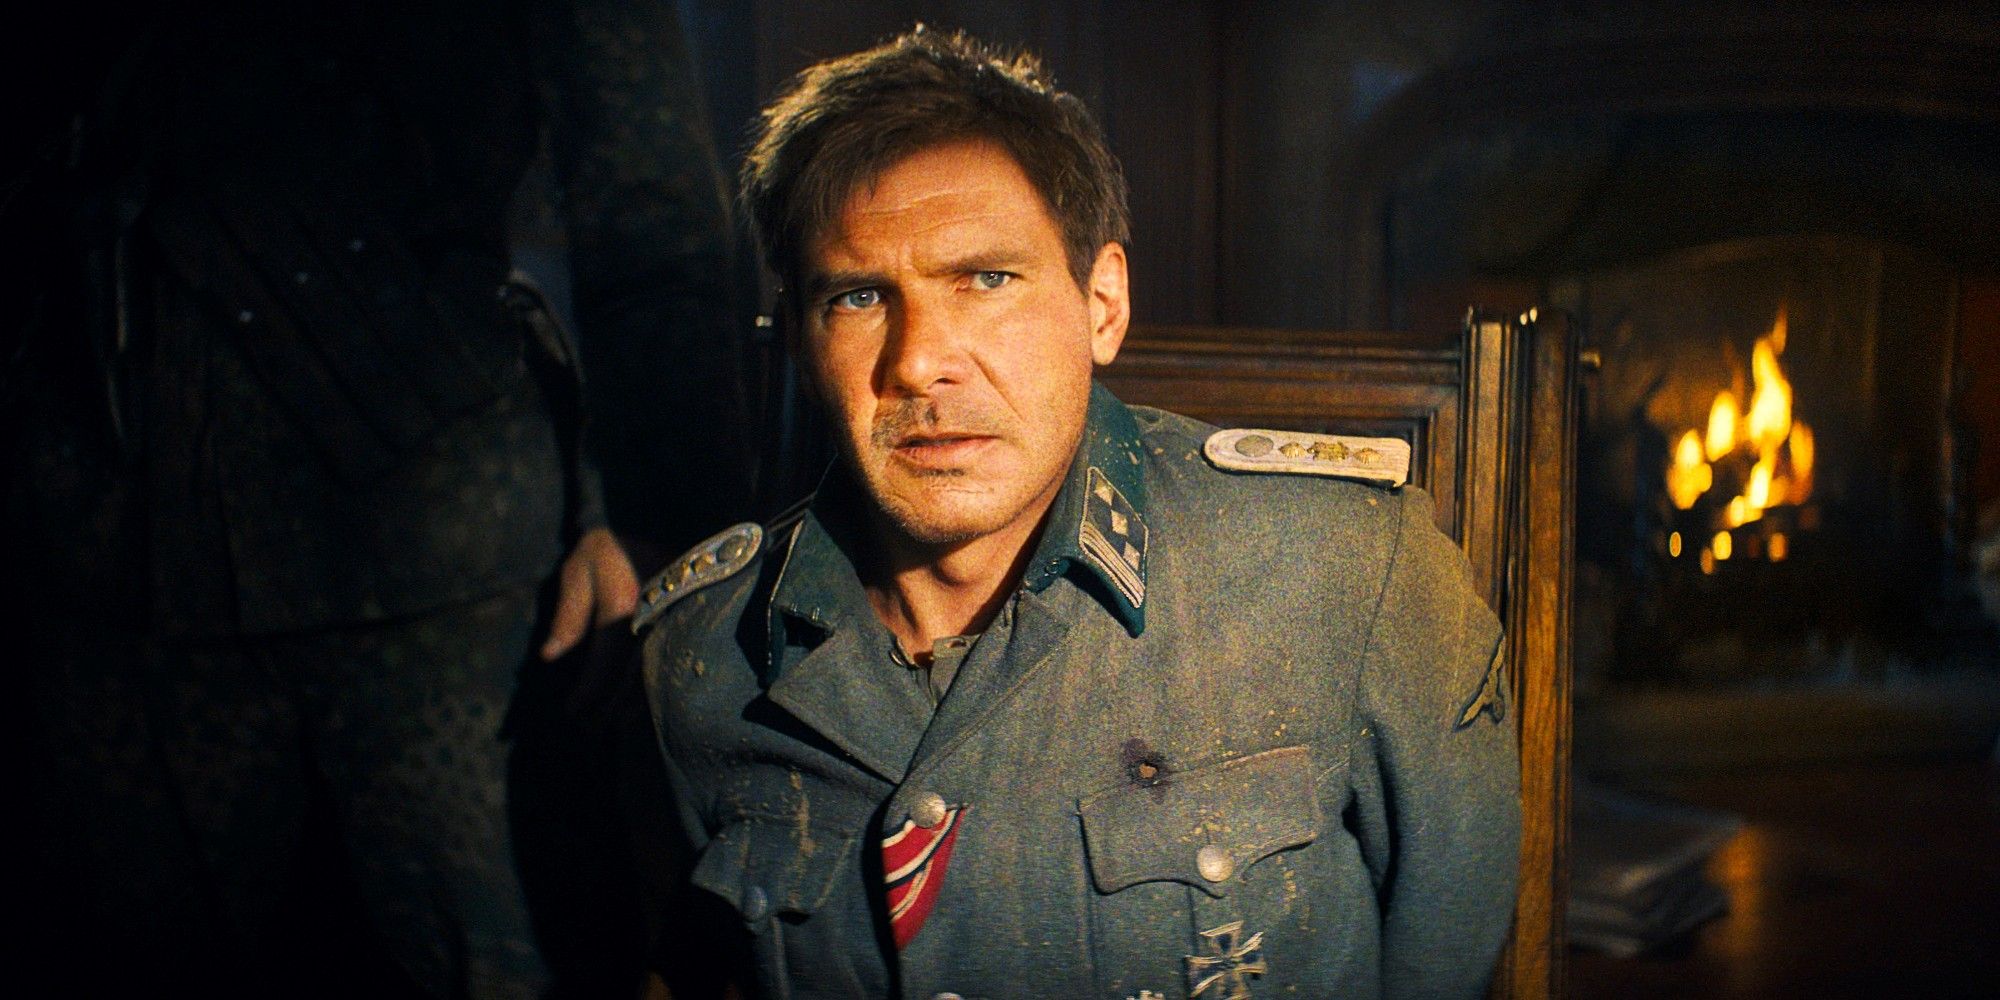 El tráiler de Indiana Jones 5 revela el primer vistazo al CGI envejecido Harrison Ford